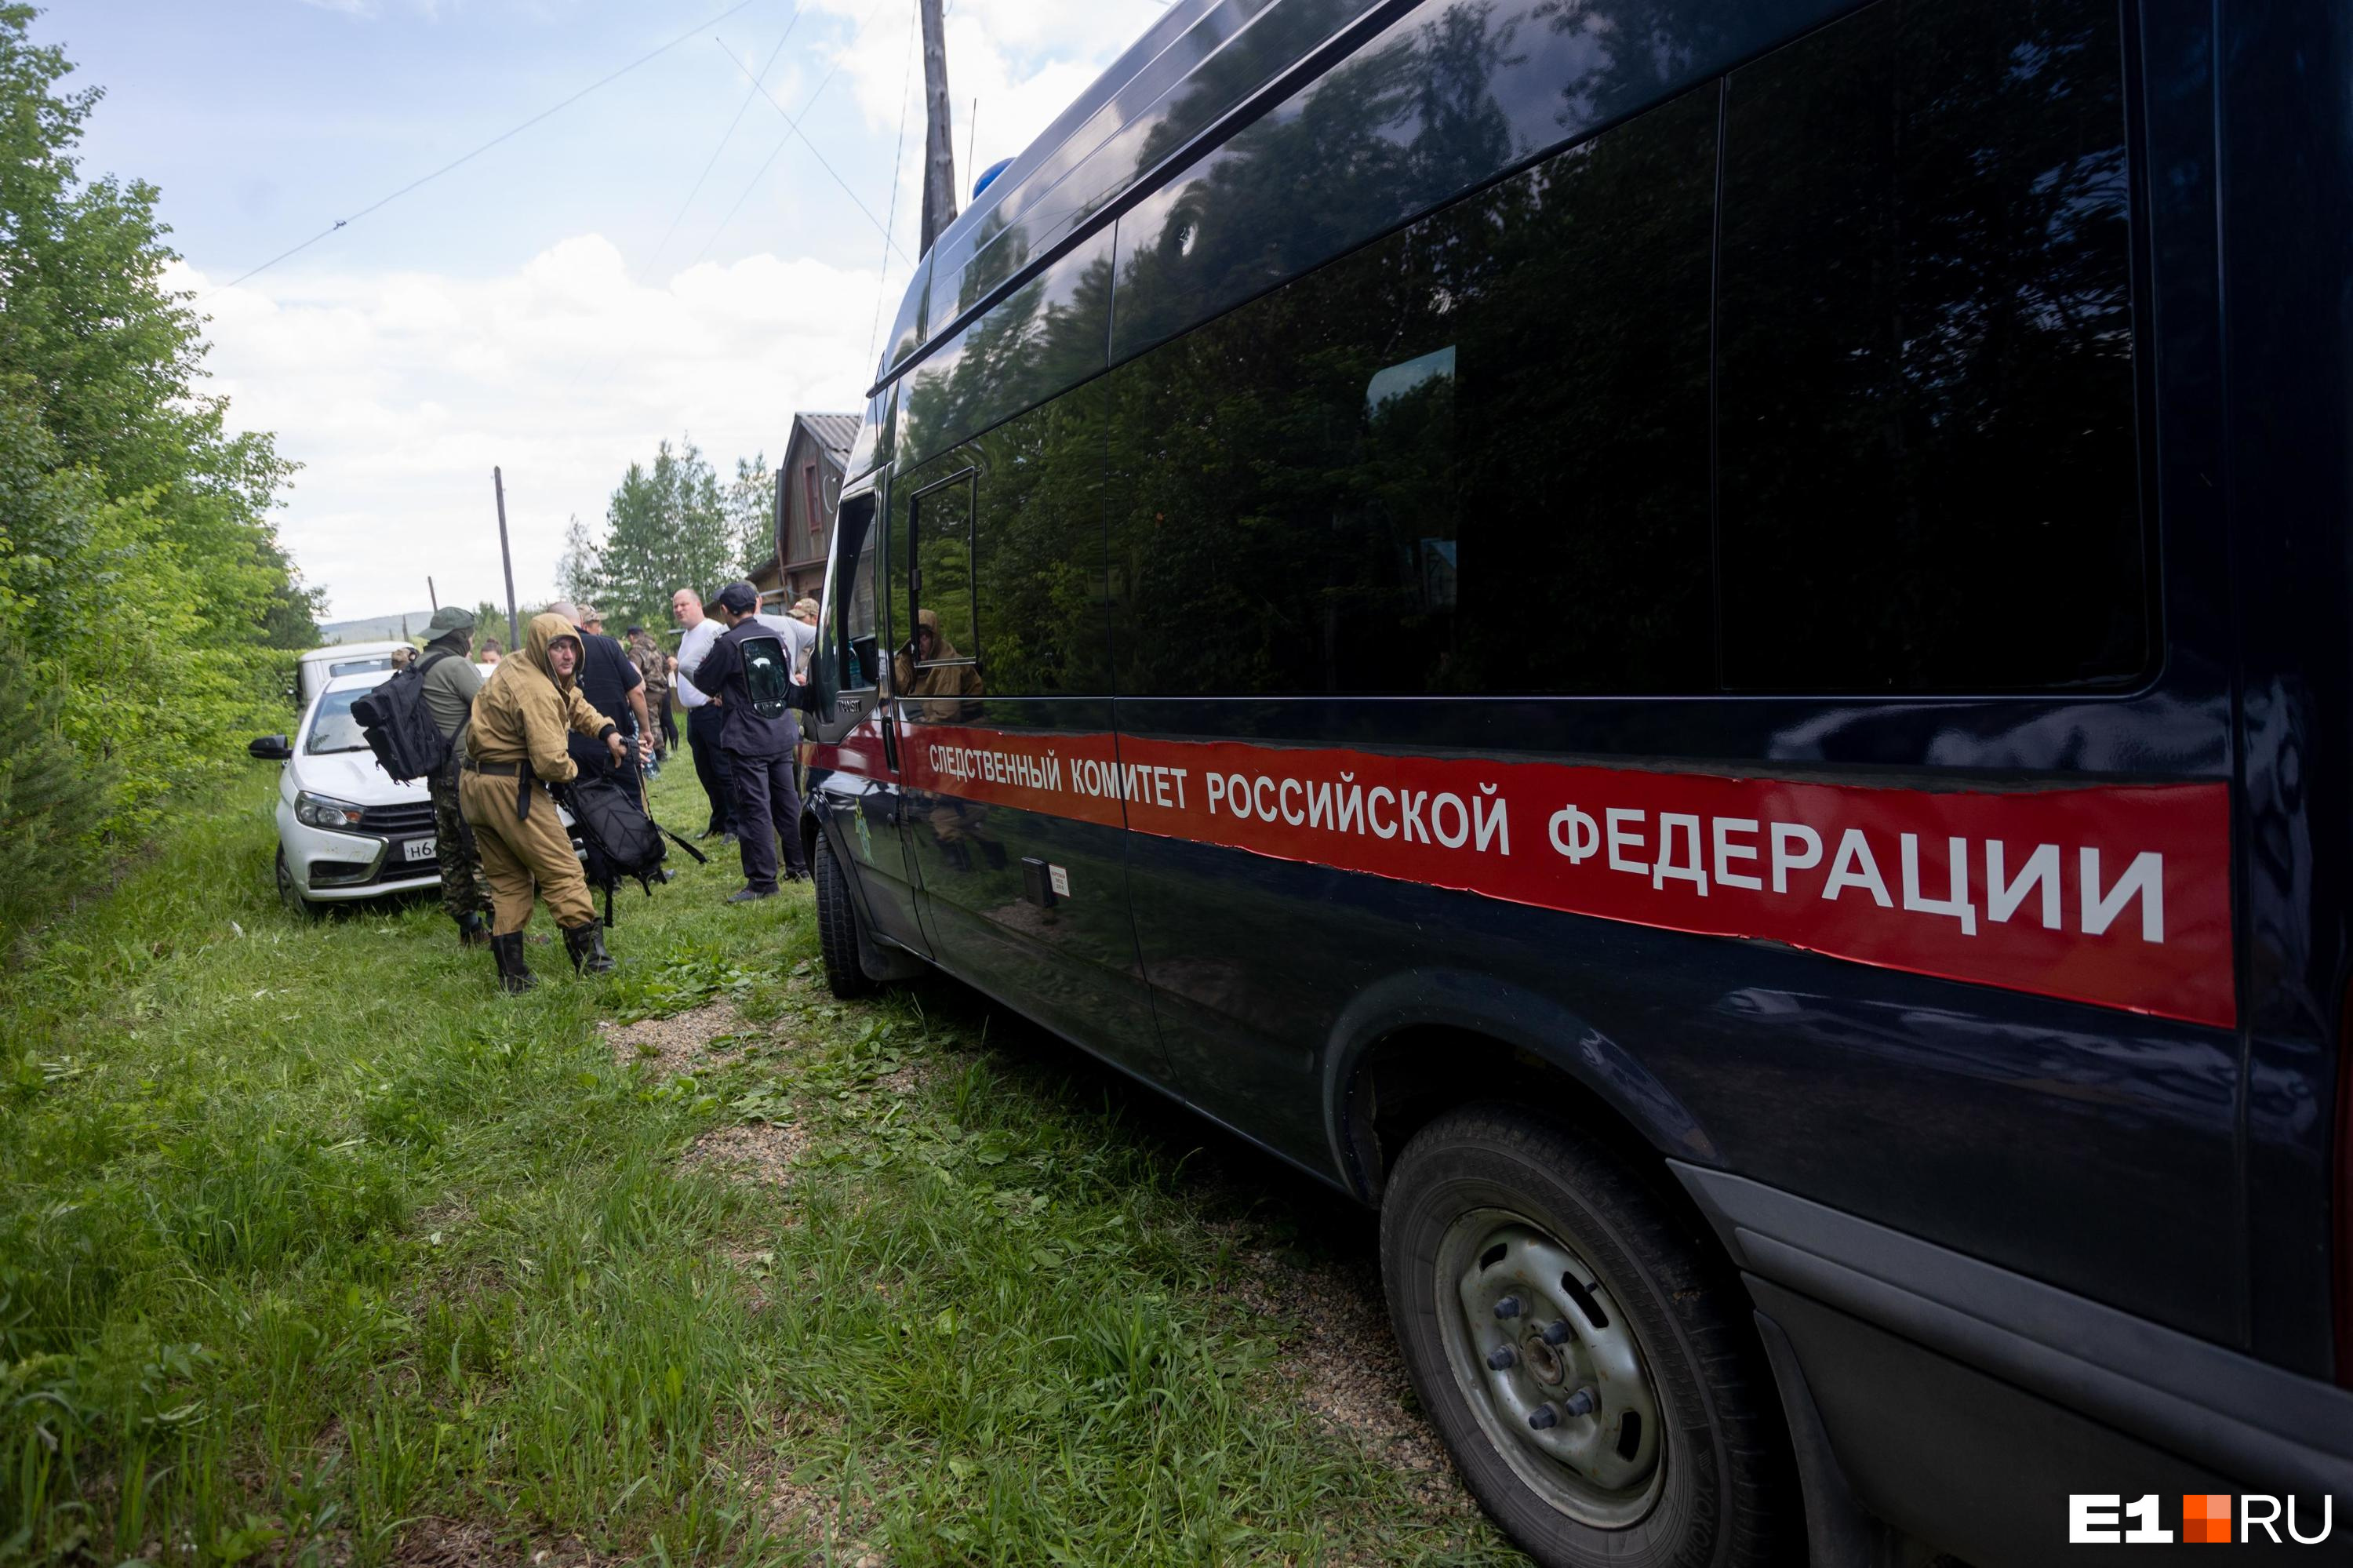 СКР допросит перевозчиков после ДТП с 17 пострадавшими в автобусе в Кузбассе. Возбуждено дело